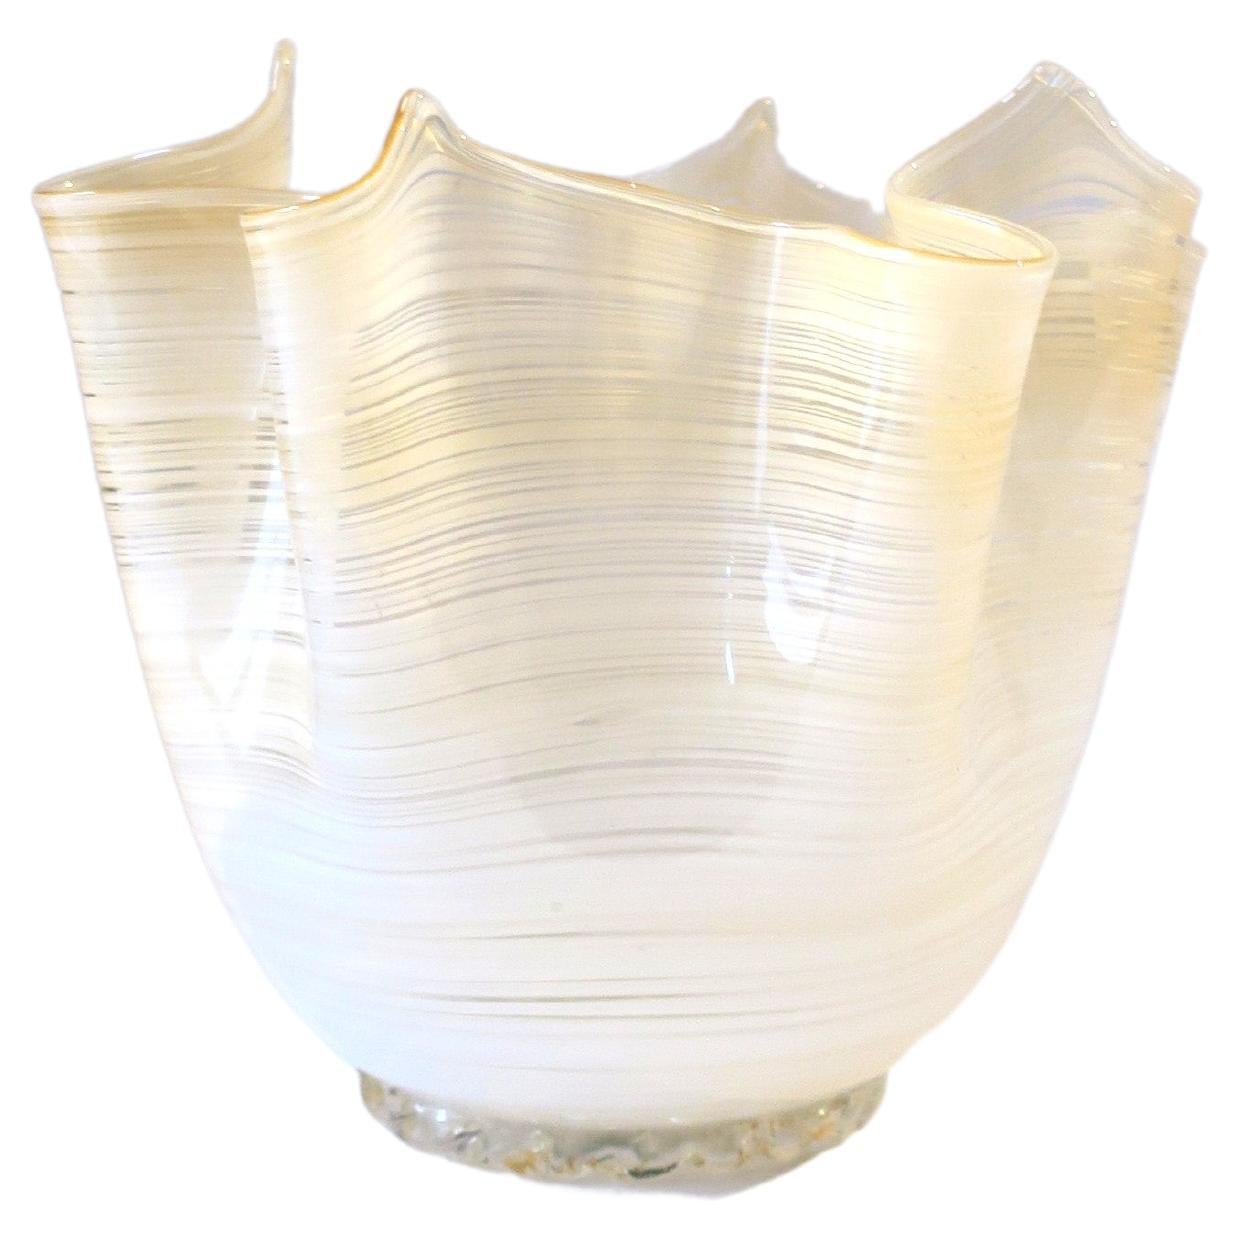 Italian Venetian Murano Art Glass Handkerchief Vase